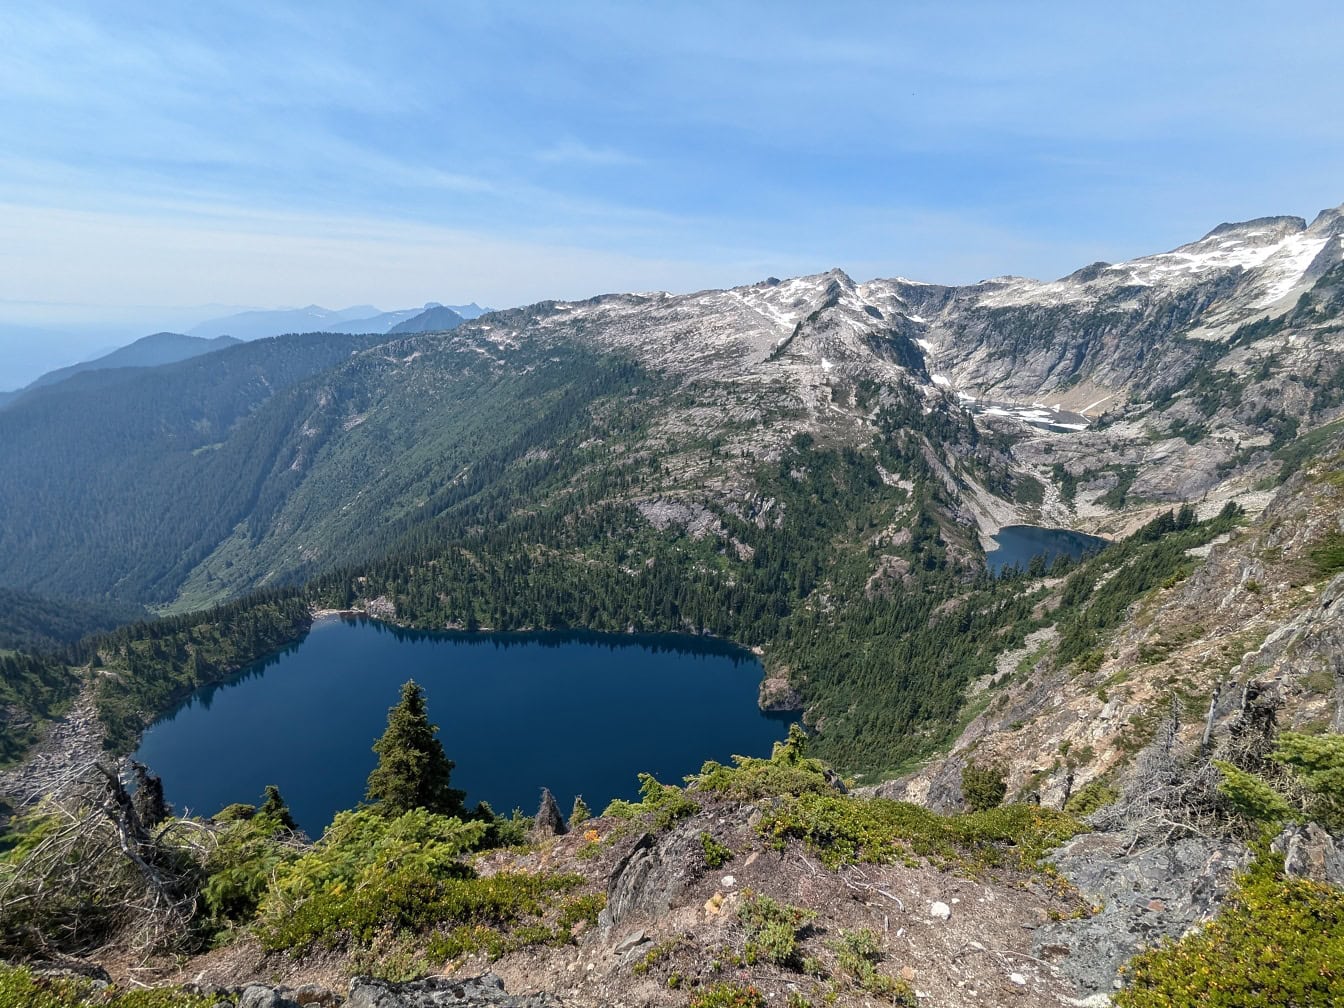 Λίμνη που περιβάλλεται από βουνά στο Εθνικό Πάρκο North Cascades στην Ουάσινγκτον